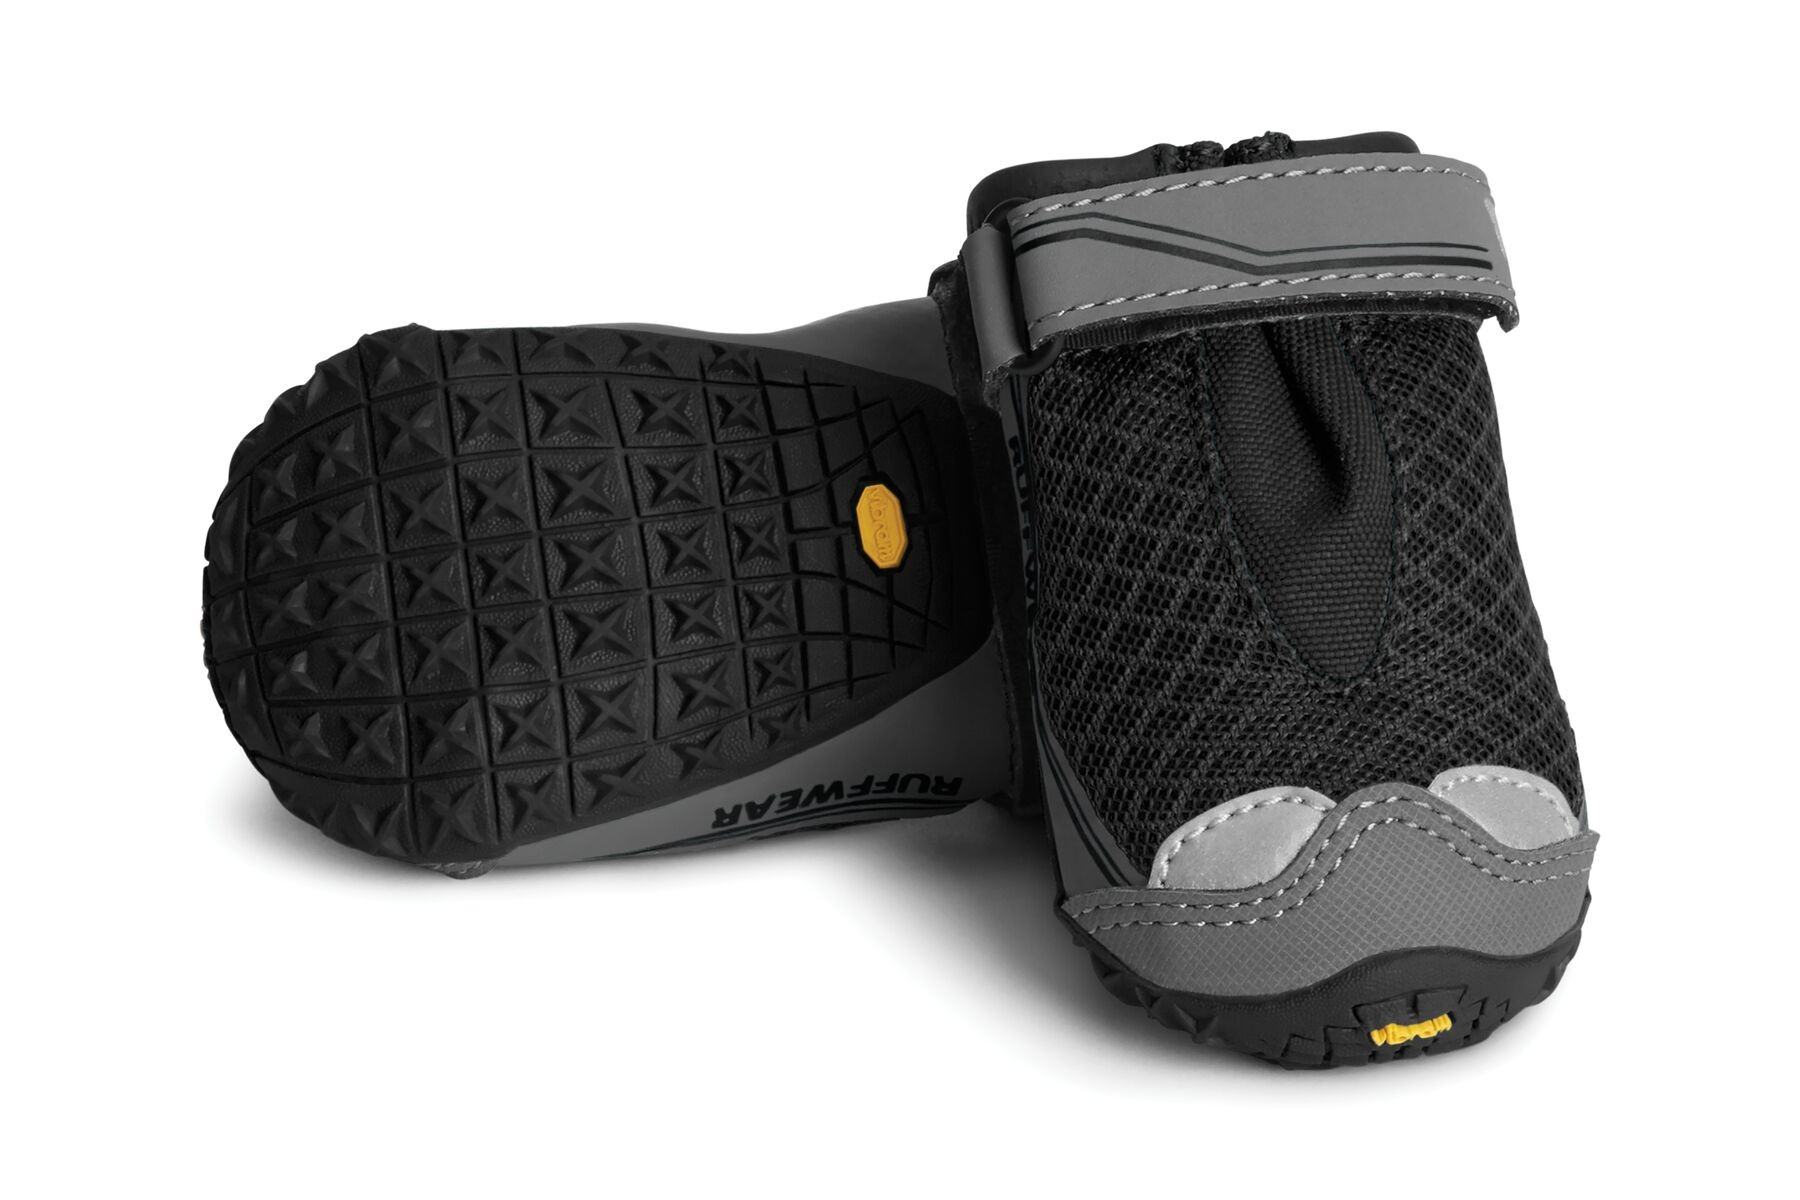 Paio di stivali Ruffwear Black Trex Grip - diverse misure disponibili